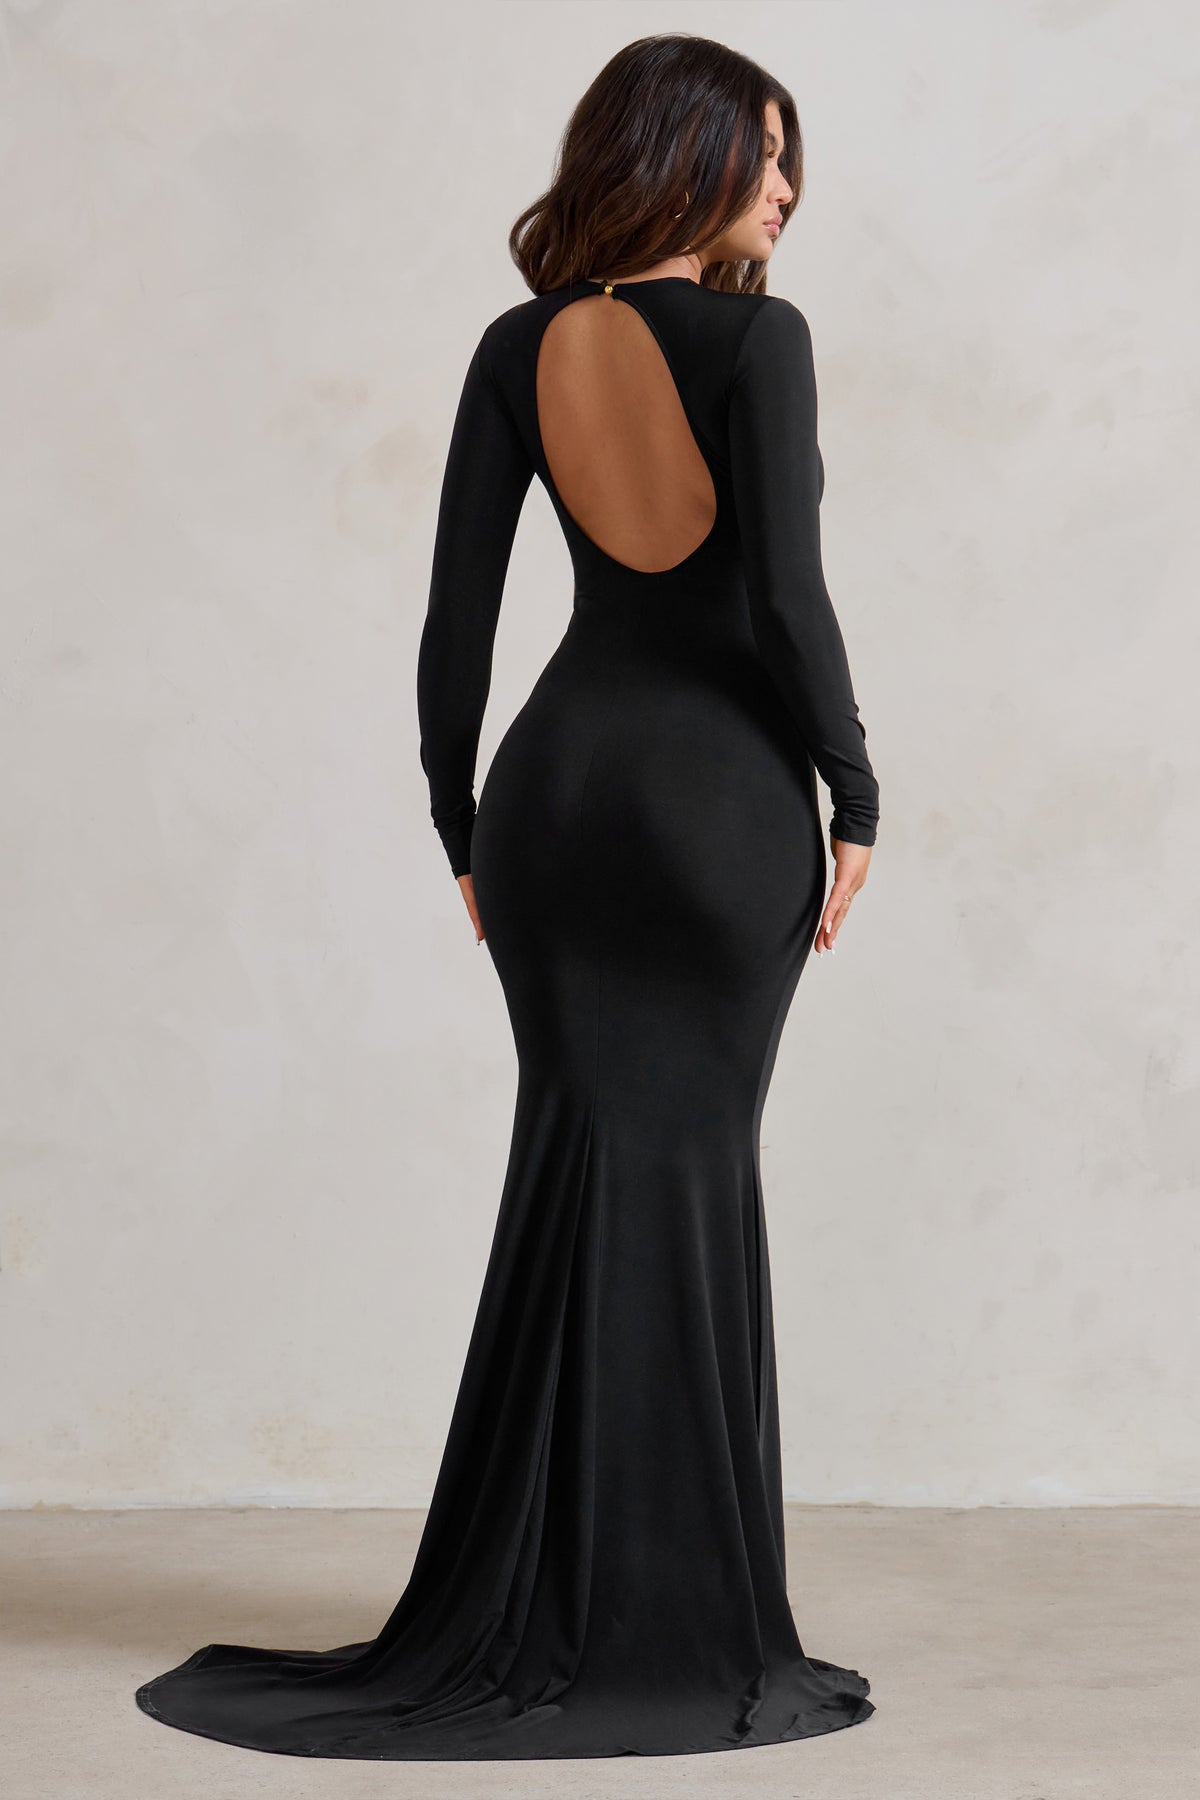 Backless Designer Dresses » Find Your Designer Style @ONS